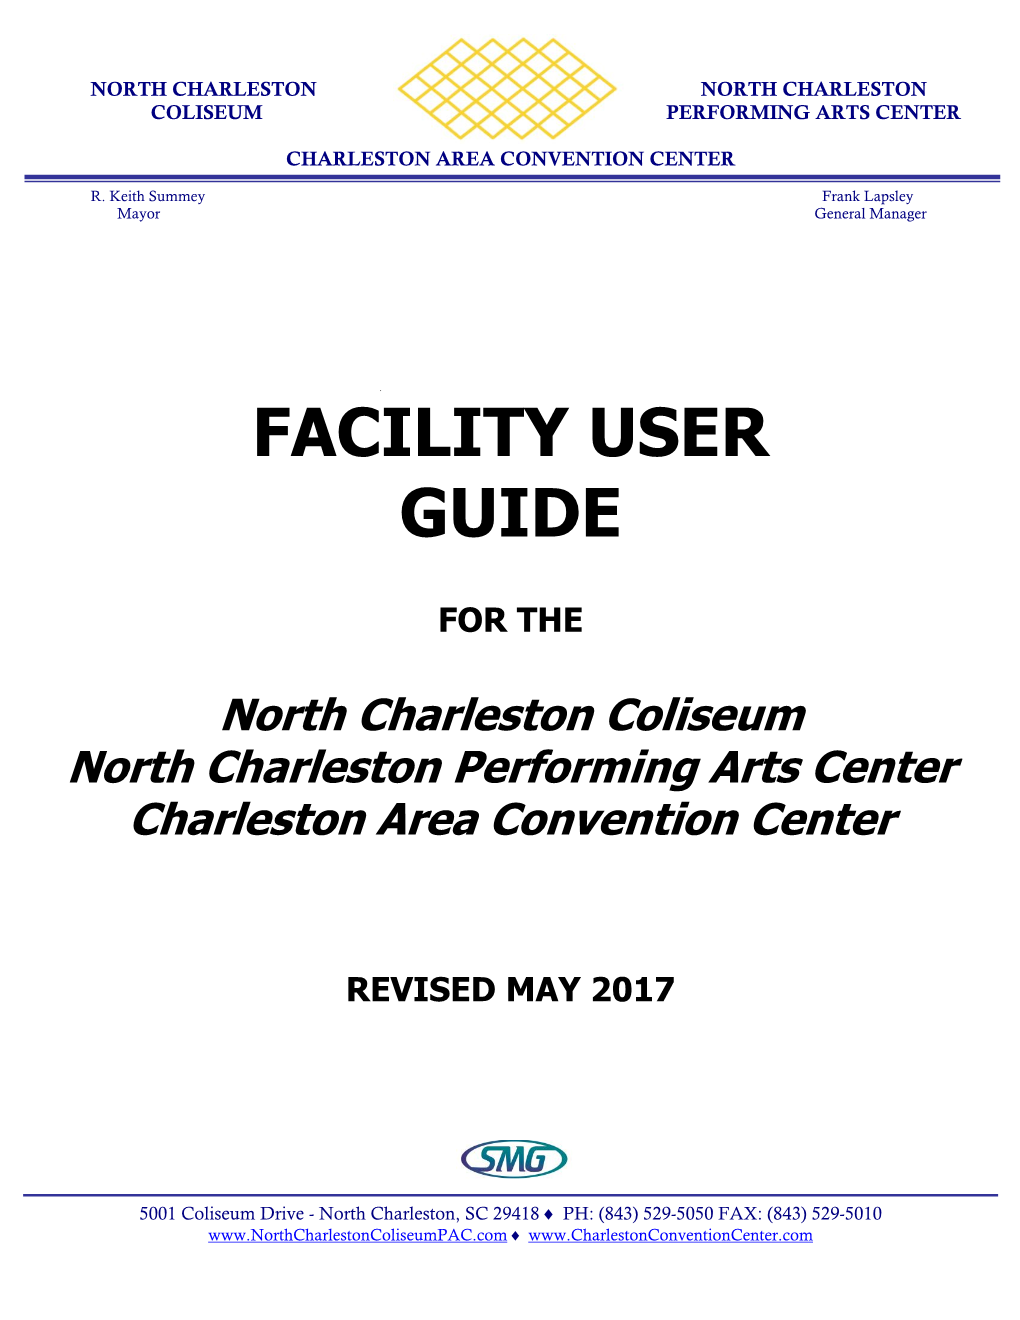 Facility User Guide